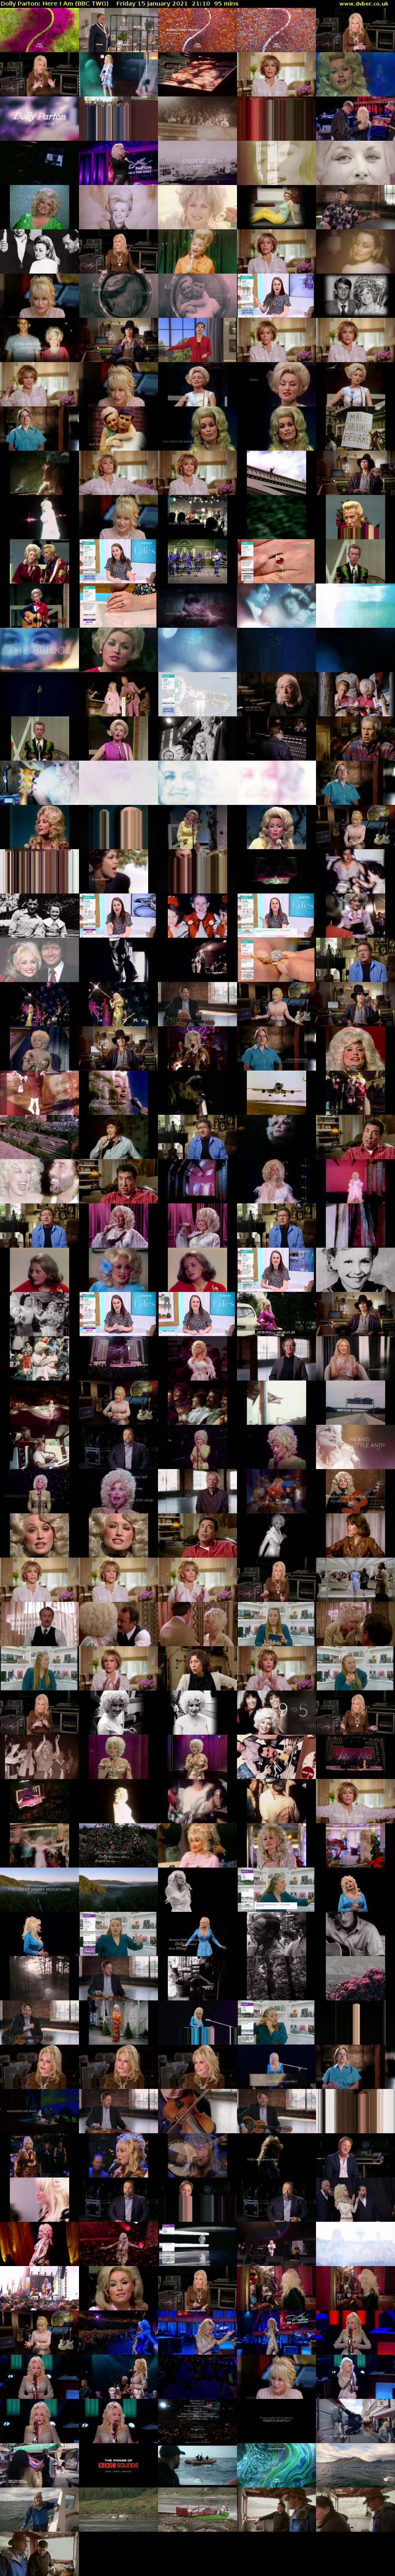 Dolly Parton: Here I Am (BBC TWO) Friday 15 January 2021 21:10 - 22:45